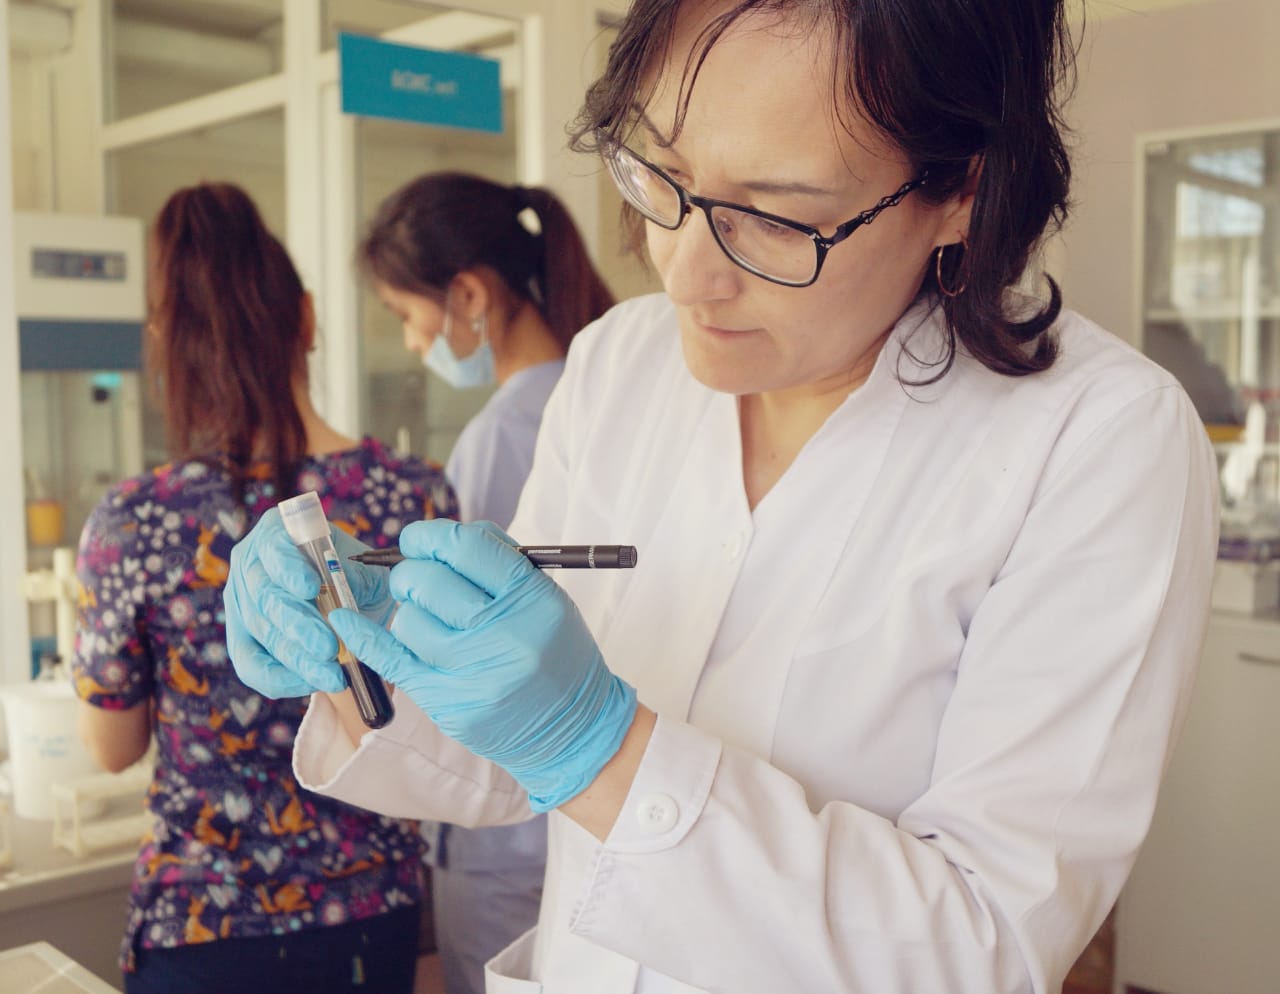 29 марта 2019 на базе лаборатории КазНИИОиР при поддержке компании АстраЗенека Казахстан прошел медицинский практический семинар «Молекулярно-генетическое тестирование пациентов с немелкоклеточным раком легкого».